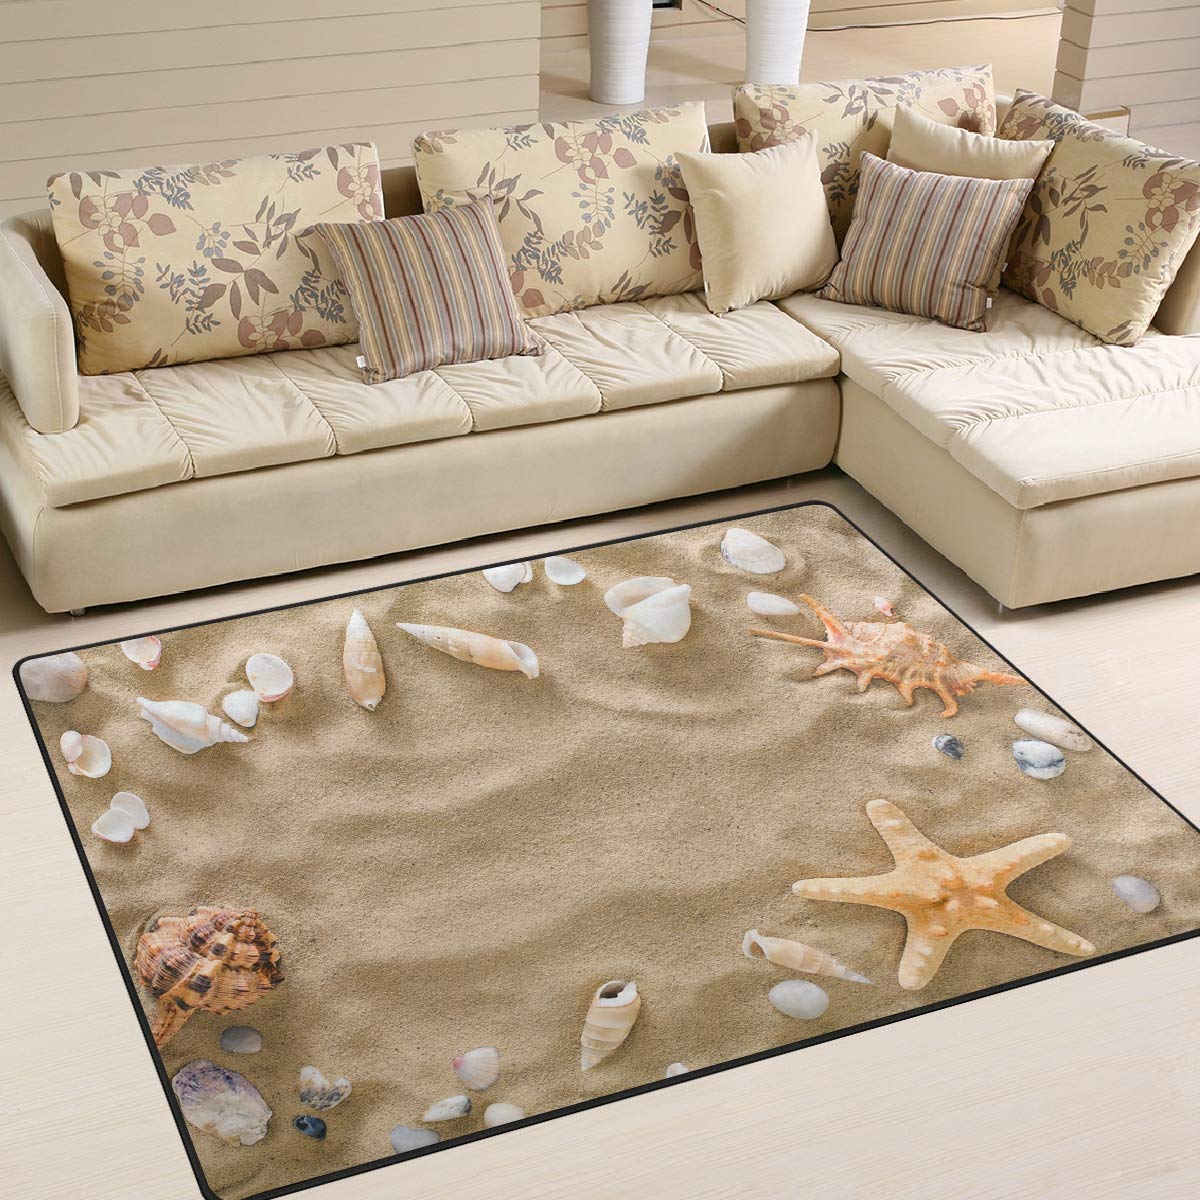 Use7 Sommer-Muschel-Teppich mit Seestern und Kieselsteinen, für Wohnzimmer, Schlafzimmer, 203 cm x 147,3 cm